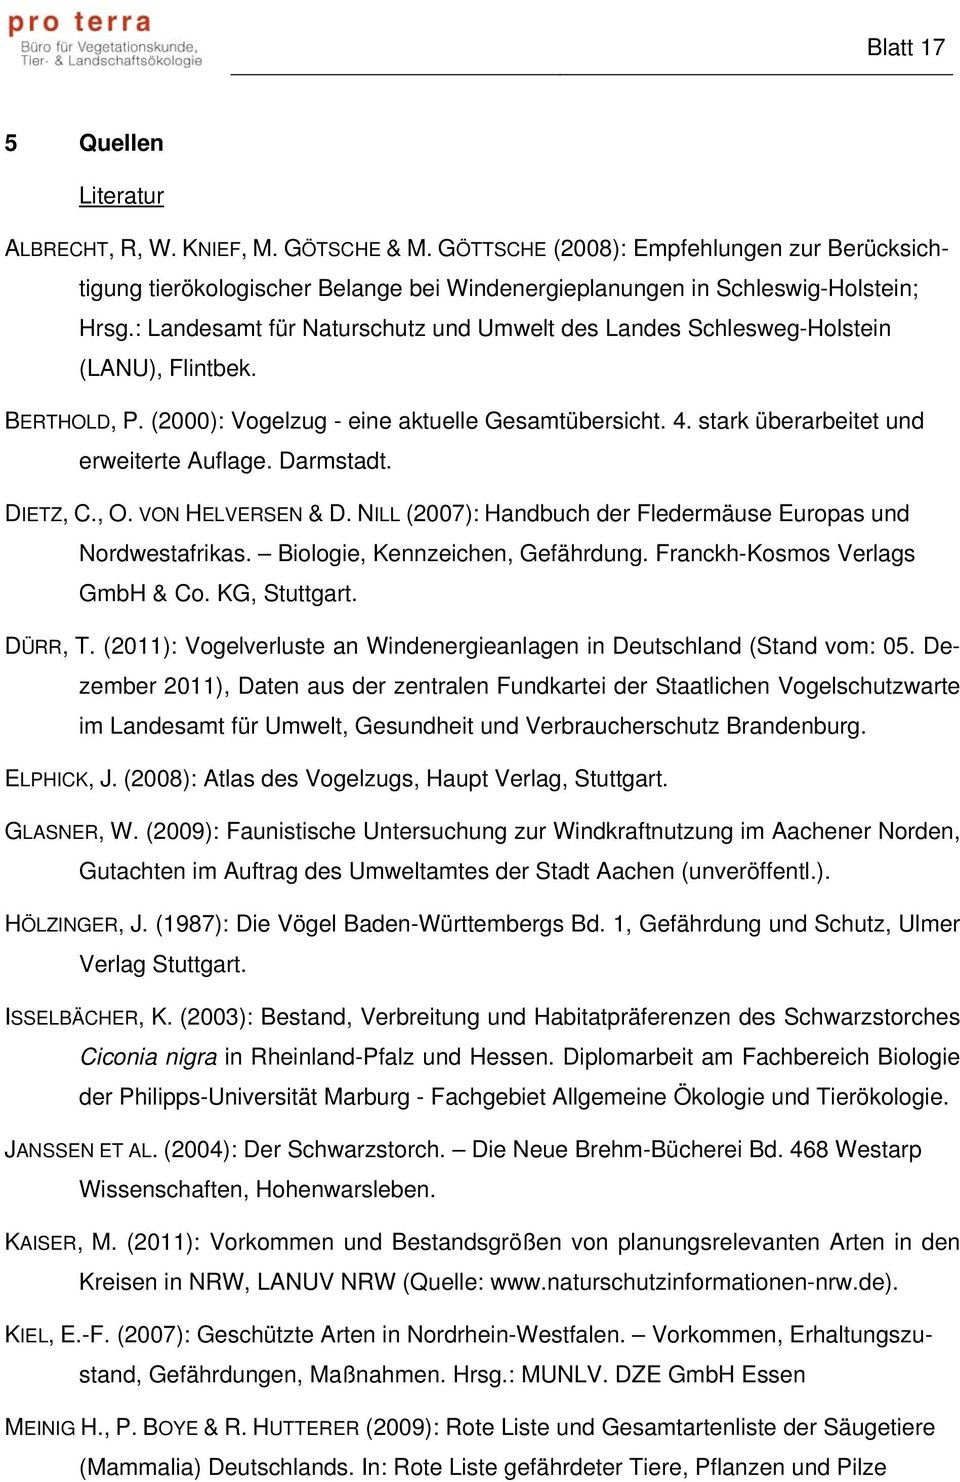 Darmstadt. DIETZ, C., O. VON HELVERSEN & D. NILL (2007): Handbuch der Fledermäuse Europas und Nordwestafrikas. Biologie, Kennzeichen, Gefährdung. Franckh-Kosmos Verlags GmbH & Co. KG, Stuttgart.